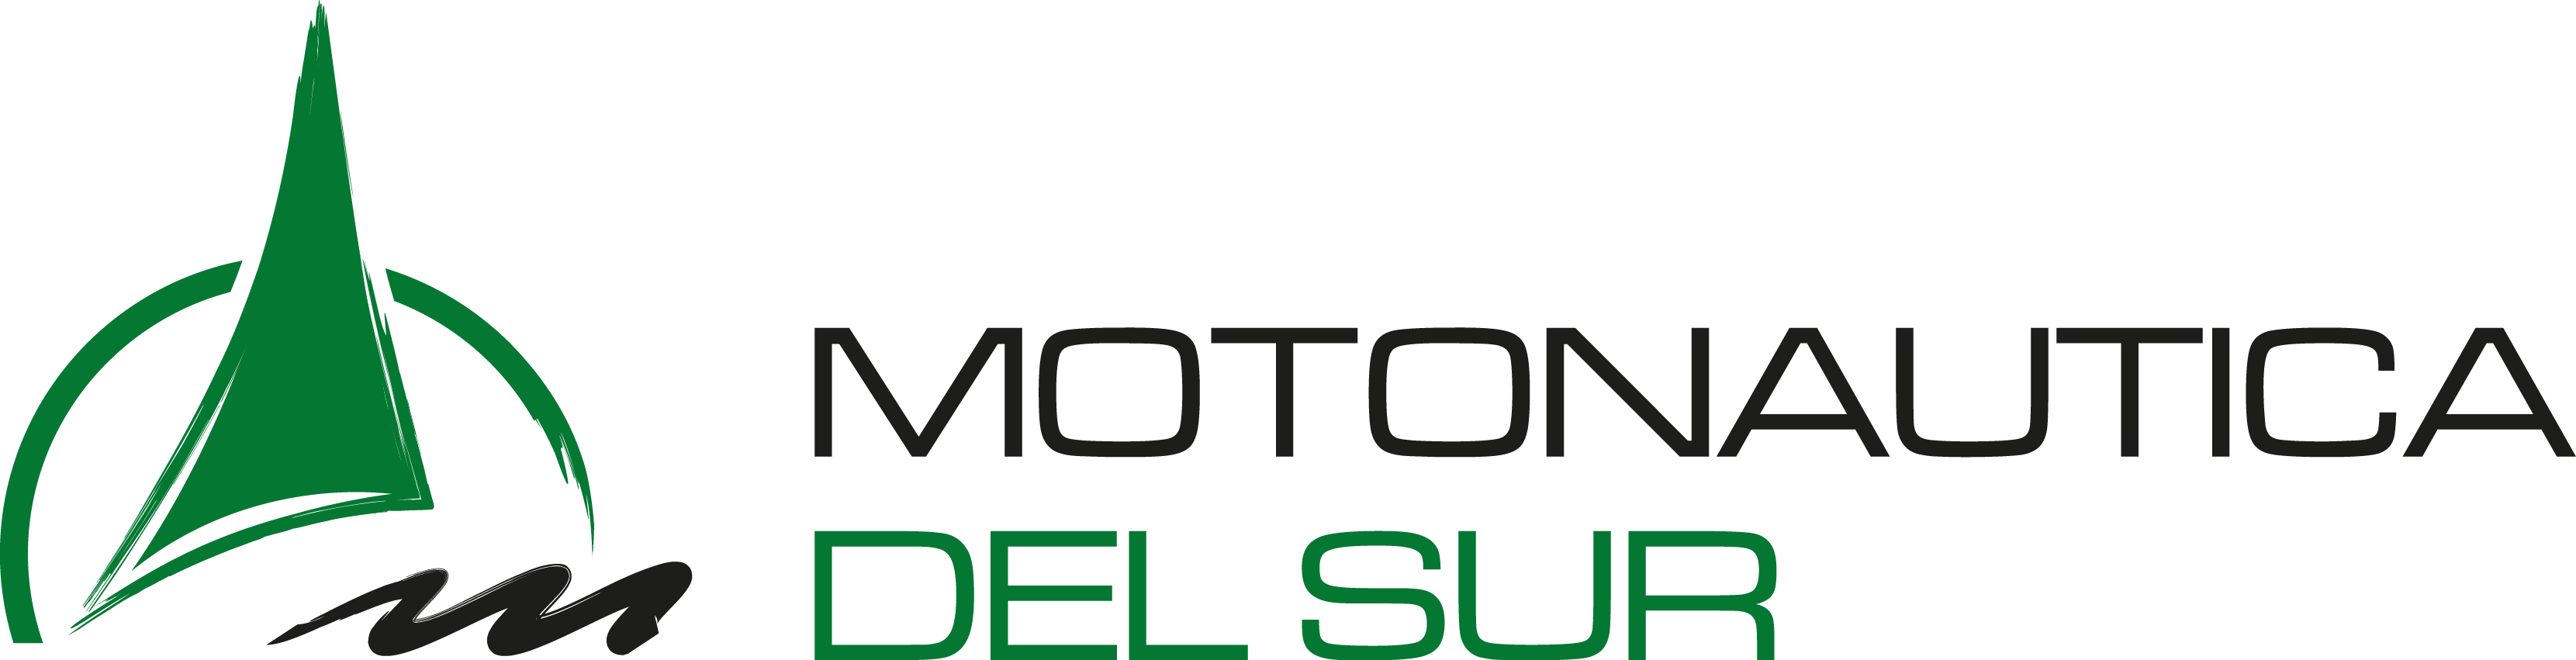 Motos Acuaticas Race  | Motonautica del Sur